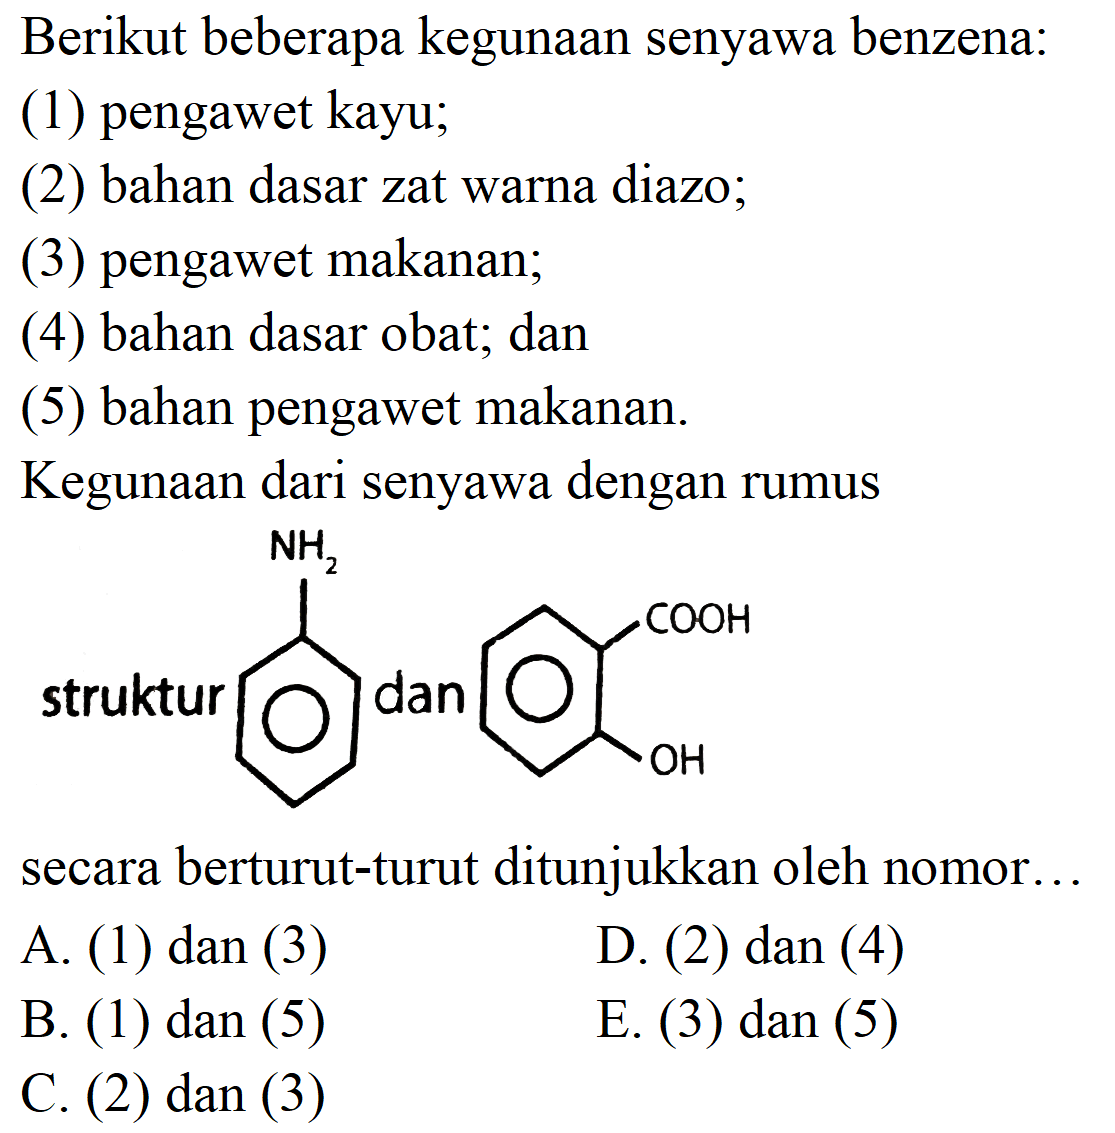 Berikut beberapa kegunaan senyawa benzena:
(1) pengawet kayu;
(2) bahan dasar zat warna diazo;
(3) pengawet makanan;
(4) bahan dasar obat; dan
(5) bahan pengawet makanan.
Kegunaan dari senyawa dengan rumus
struktur
Nc1ccccc1
secara berturut-turut ditunjukkan oleh nomor...